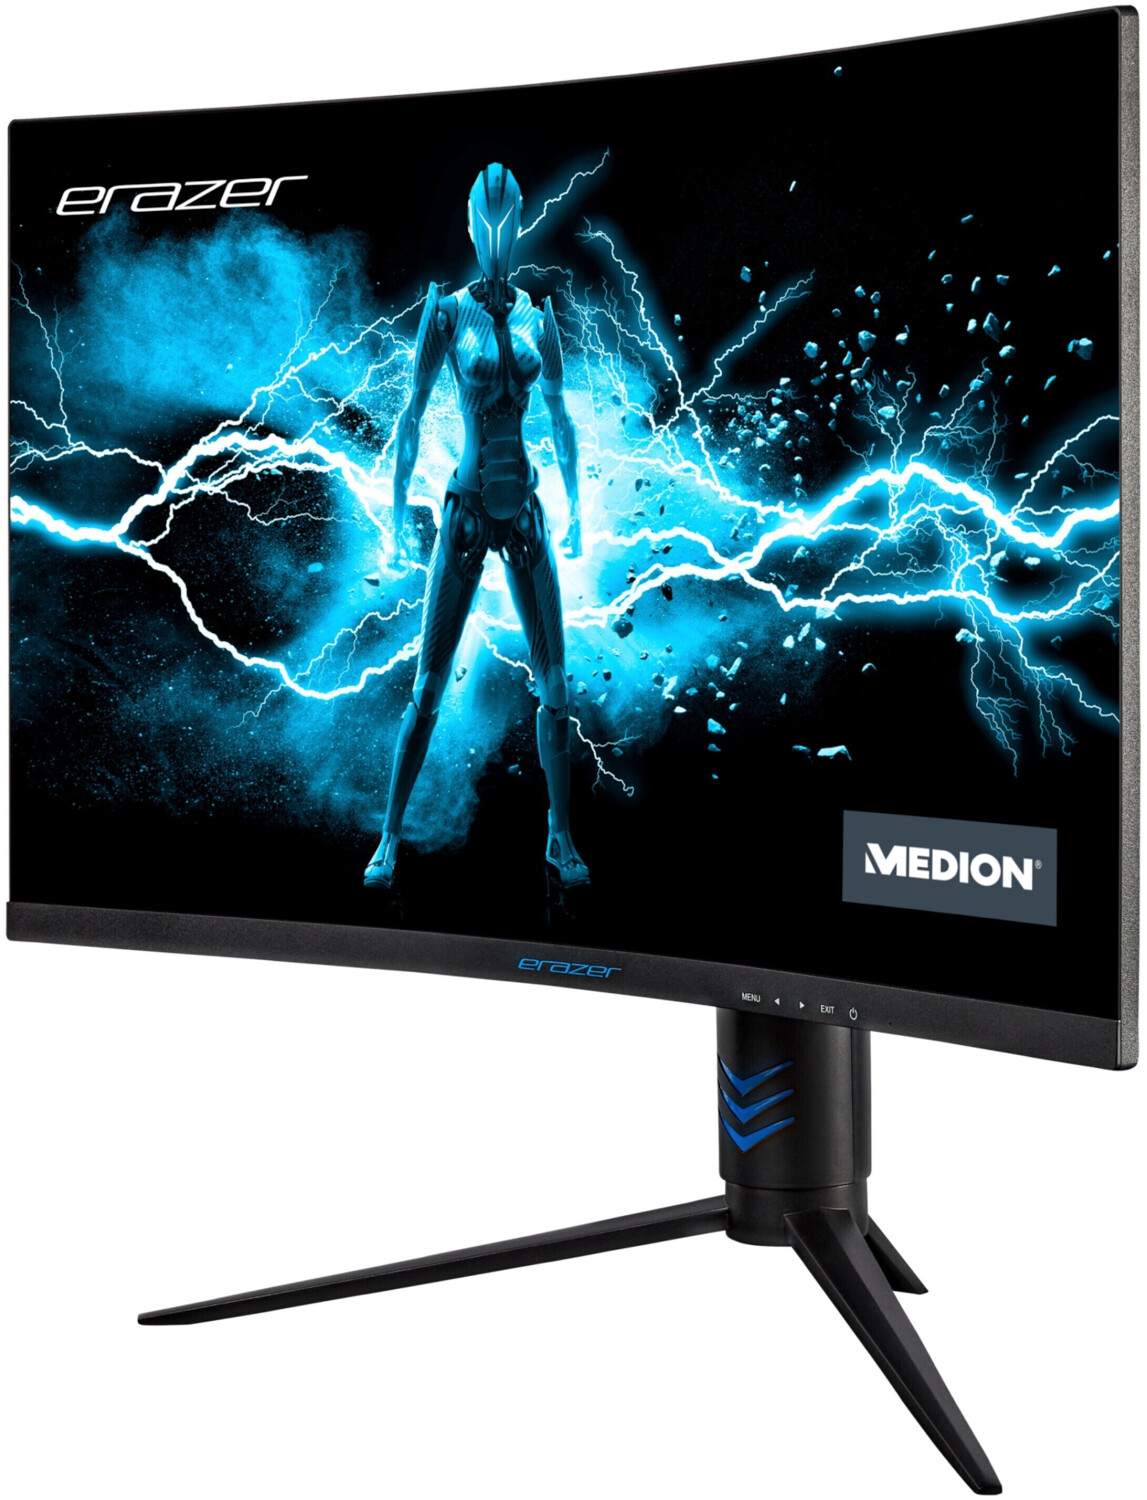 MEDION Ecran PC Gamer Incurvé - Erazer Spectator X30 - 27 QHD